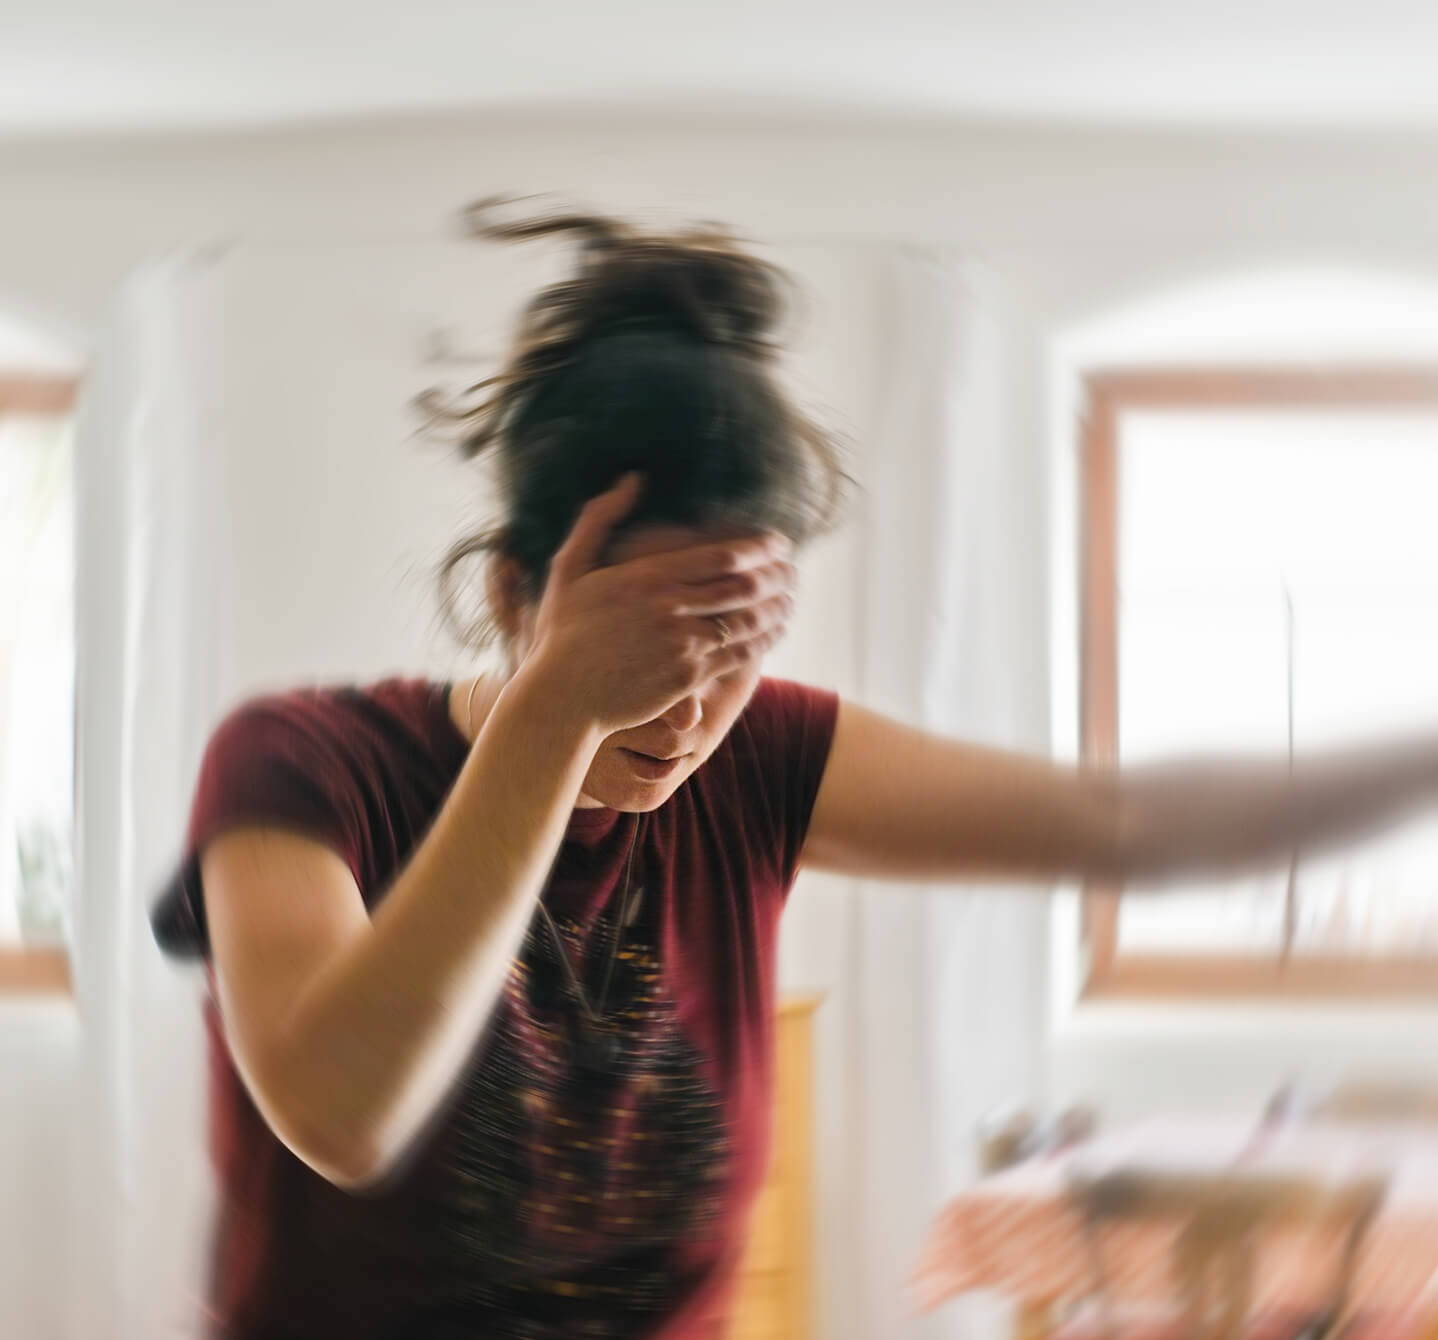 En kvinne holder en hånd opp mot pannen mens hun støtter seg til en vegg, det kan se ut som hun er plaget av hodepine. Kan det være allergi?